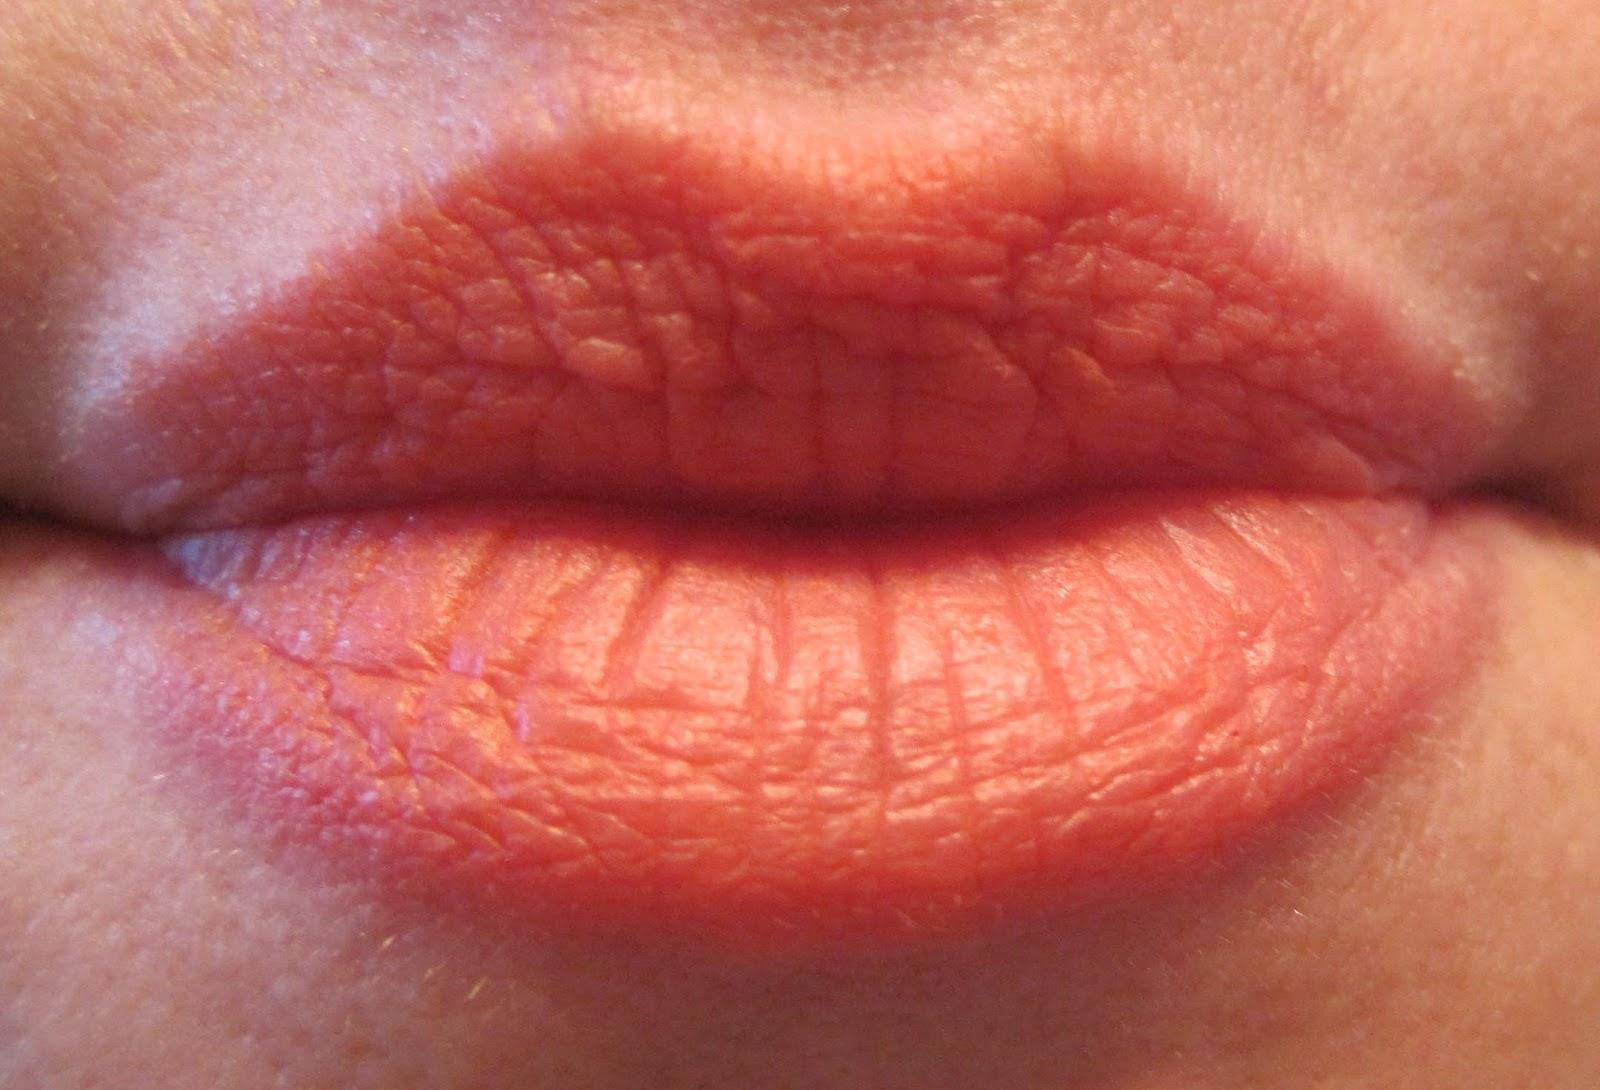 唇炎导致嘴唇发痒蜕皮，涂最滋润的唇釉都刺疼显唇纹，怎么才能快速改善啊？ - 知乎